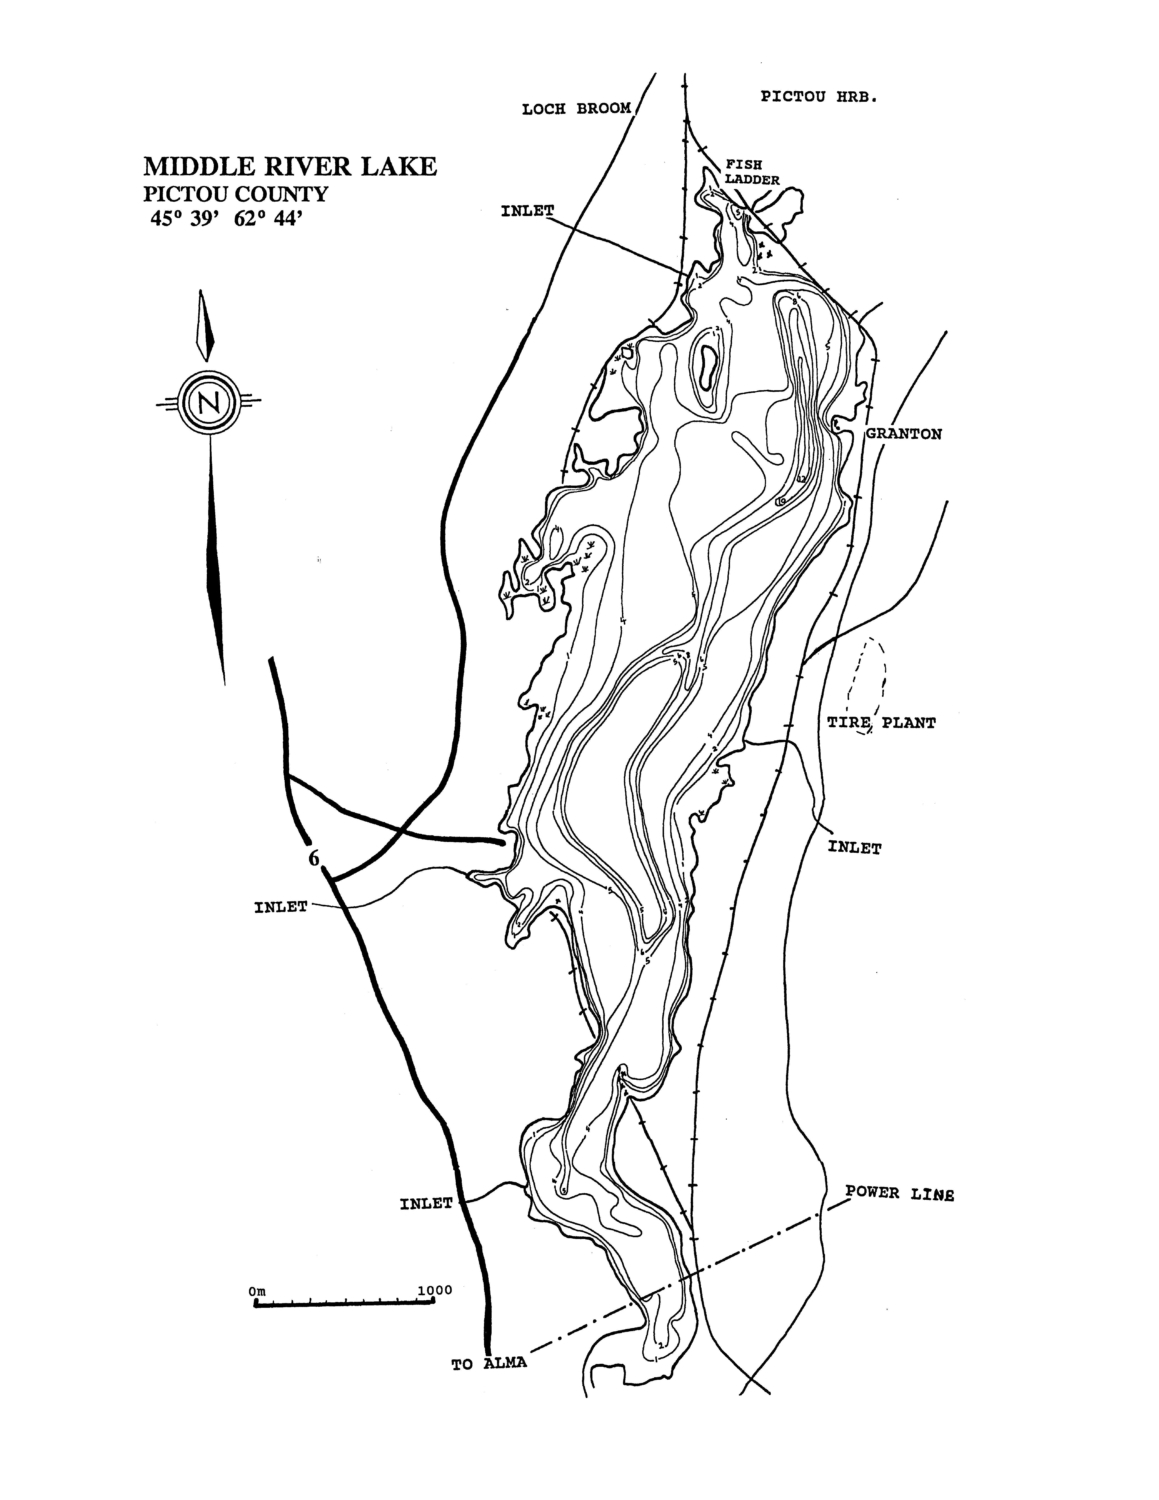 Middle River Lake - Pictou County Lake Maps